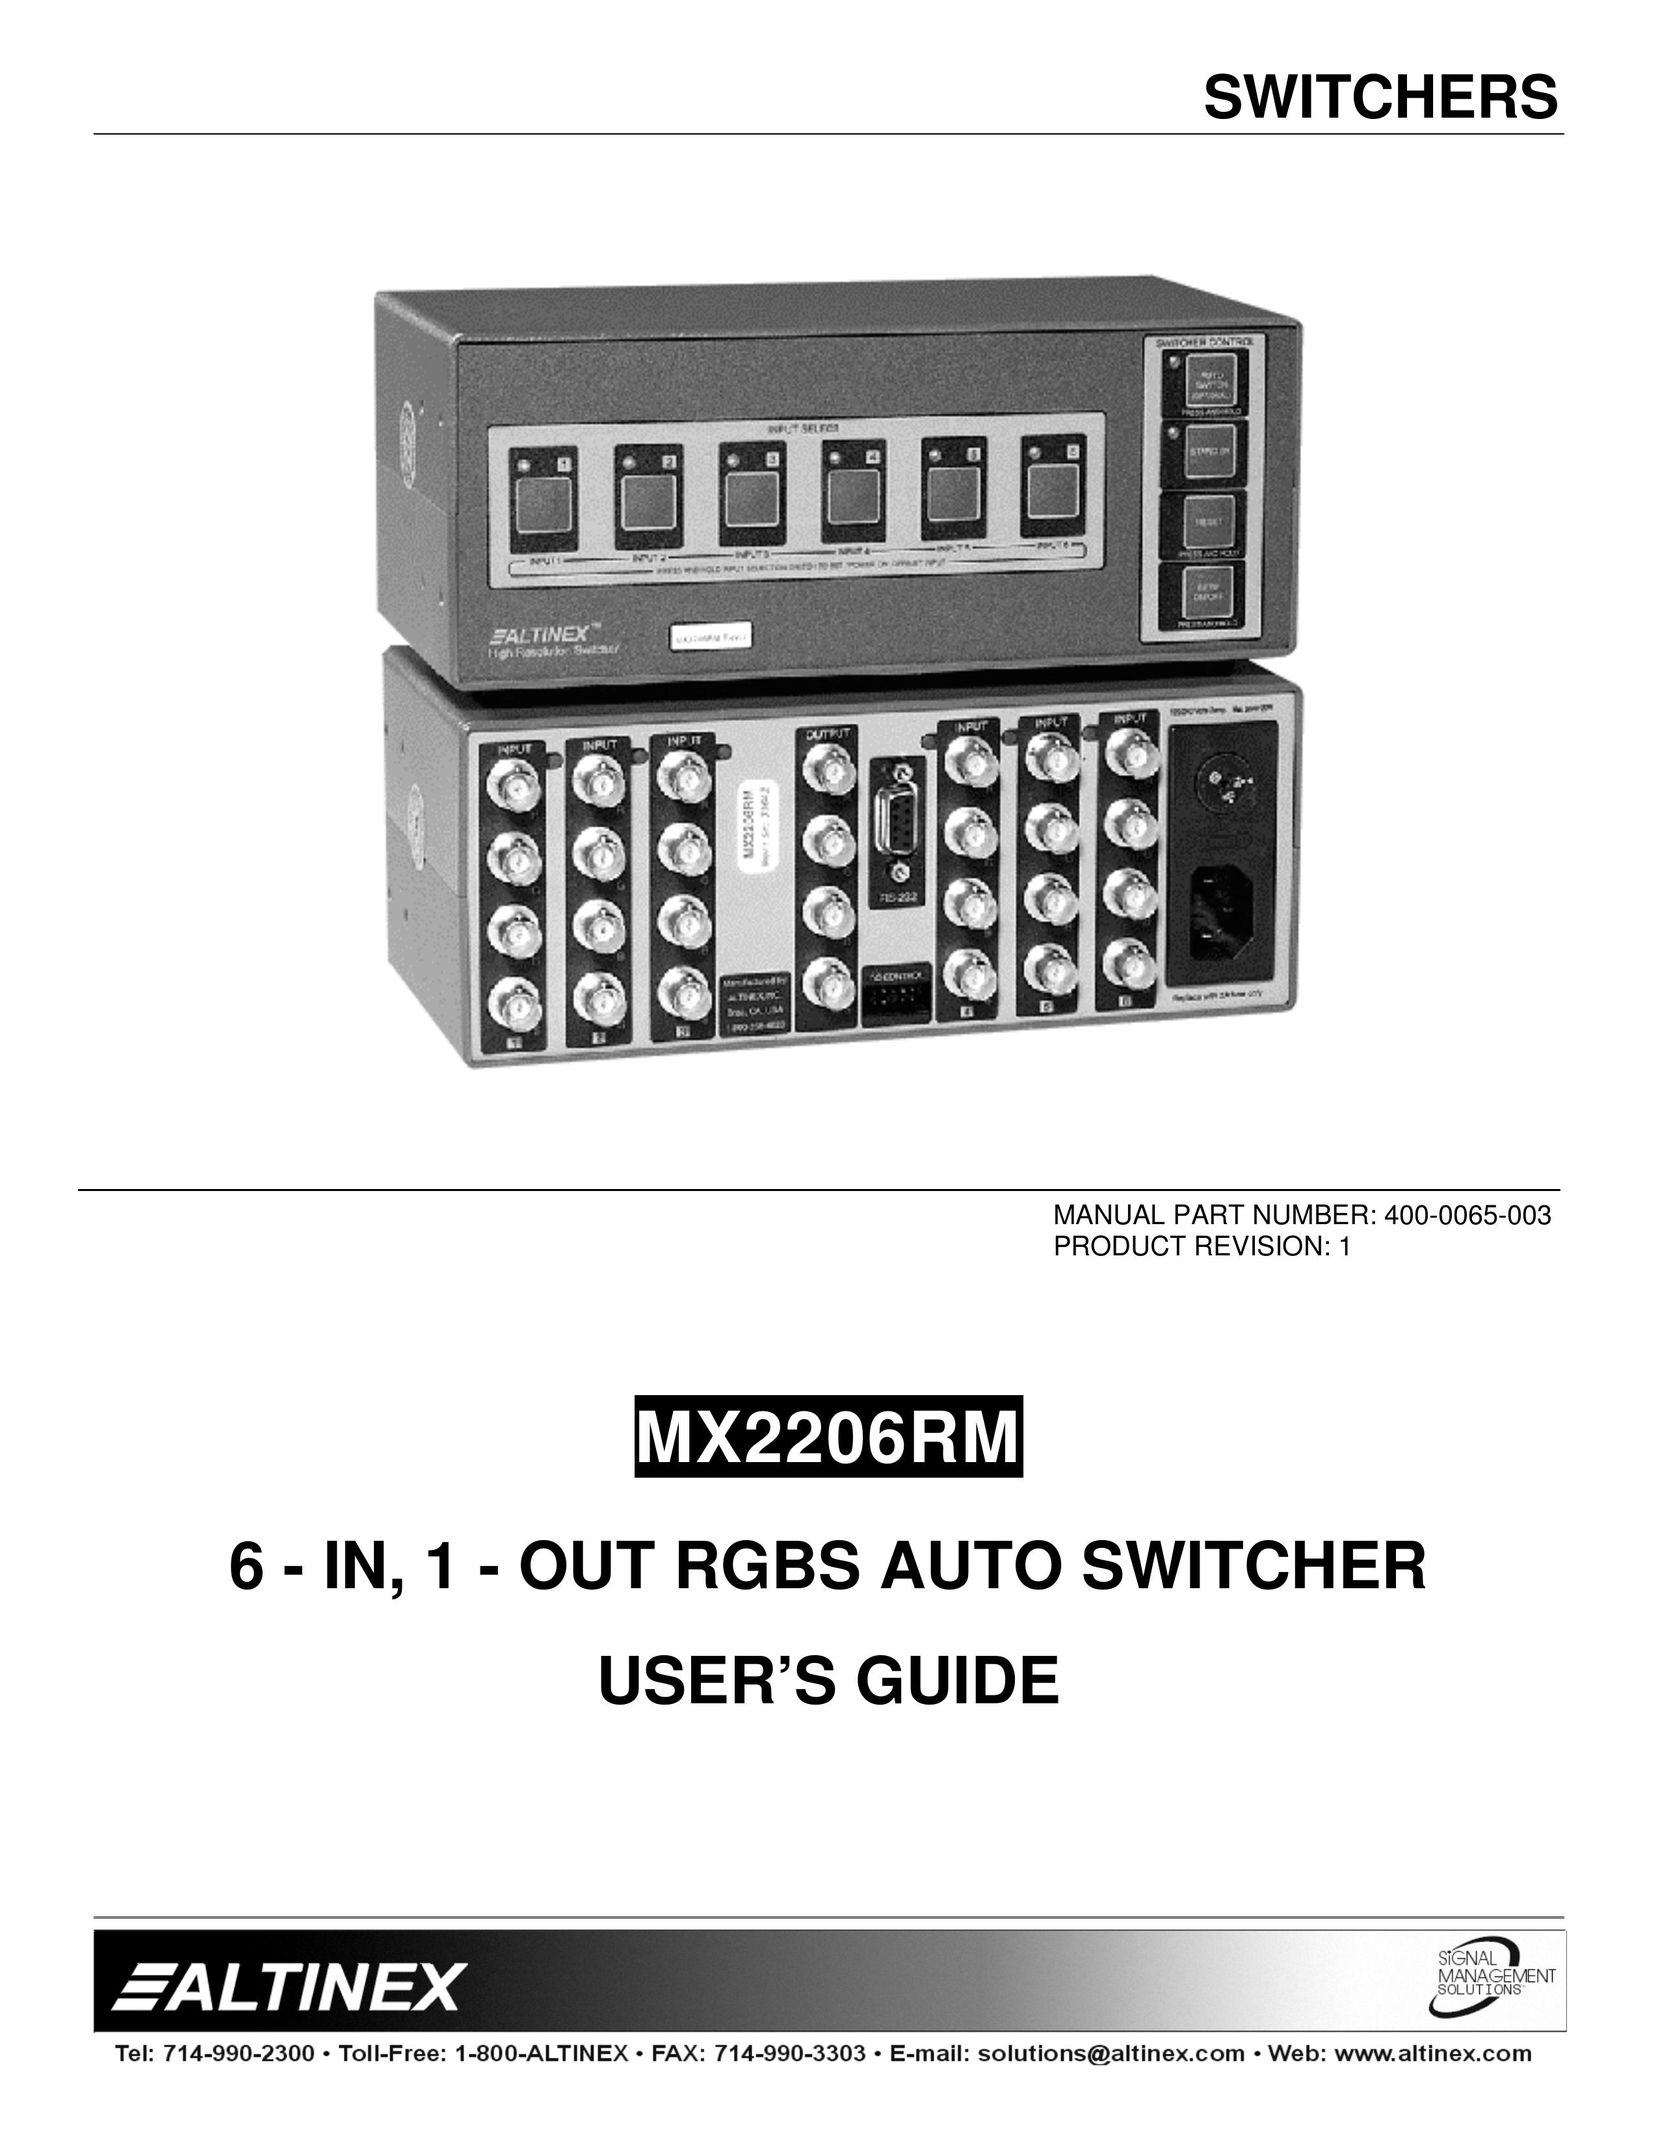 Altinex MX2206RM Switch User Manual